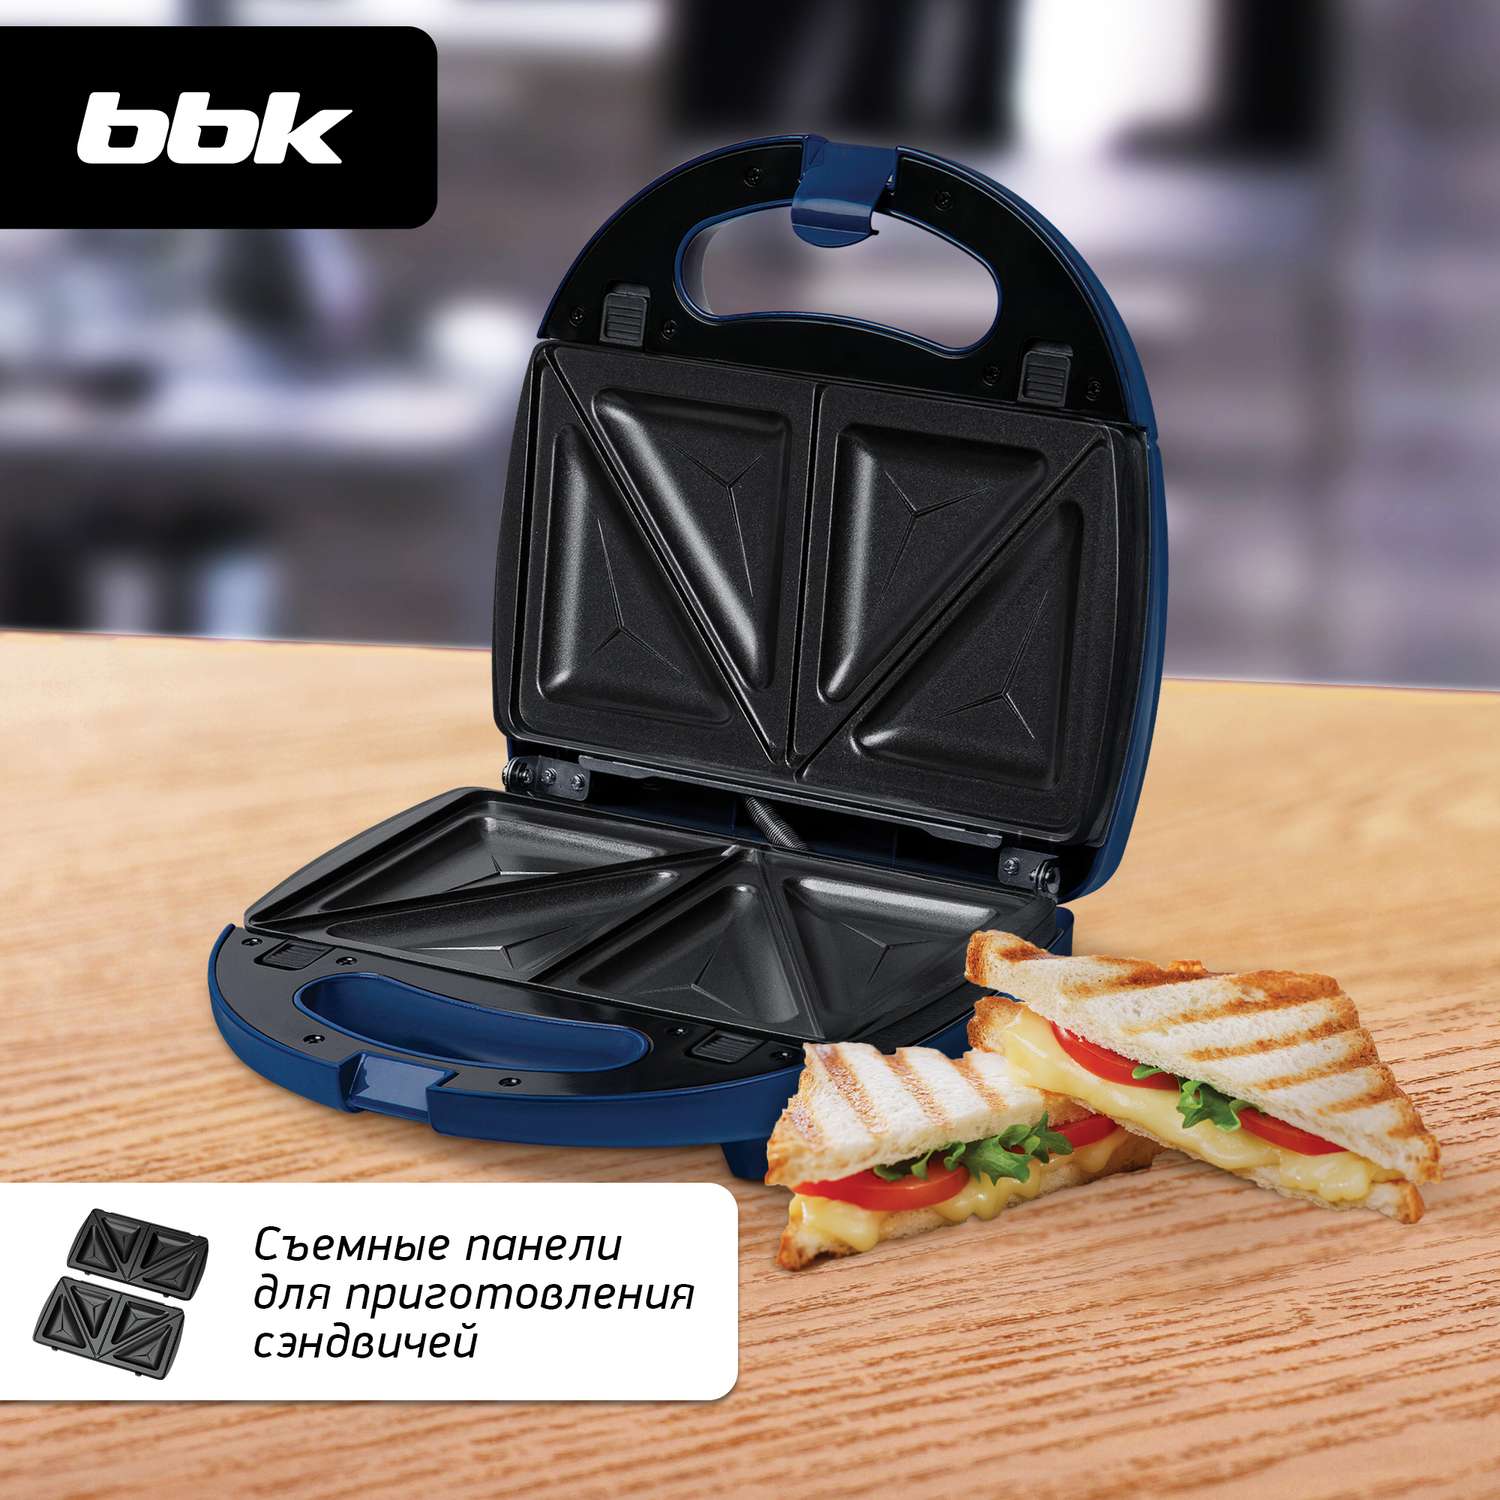 Сэндвичница BBK ES028 синяя мощность 790 Вт съемные панели в комплекте - фото 6